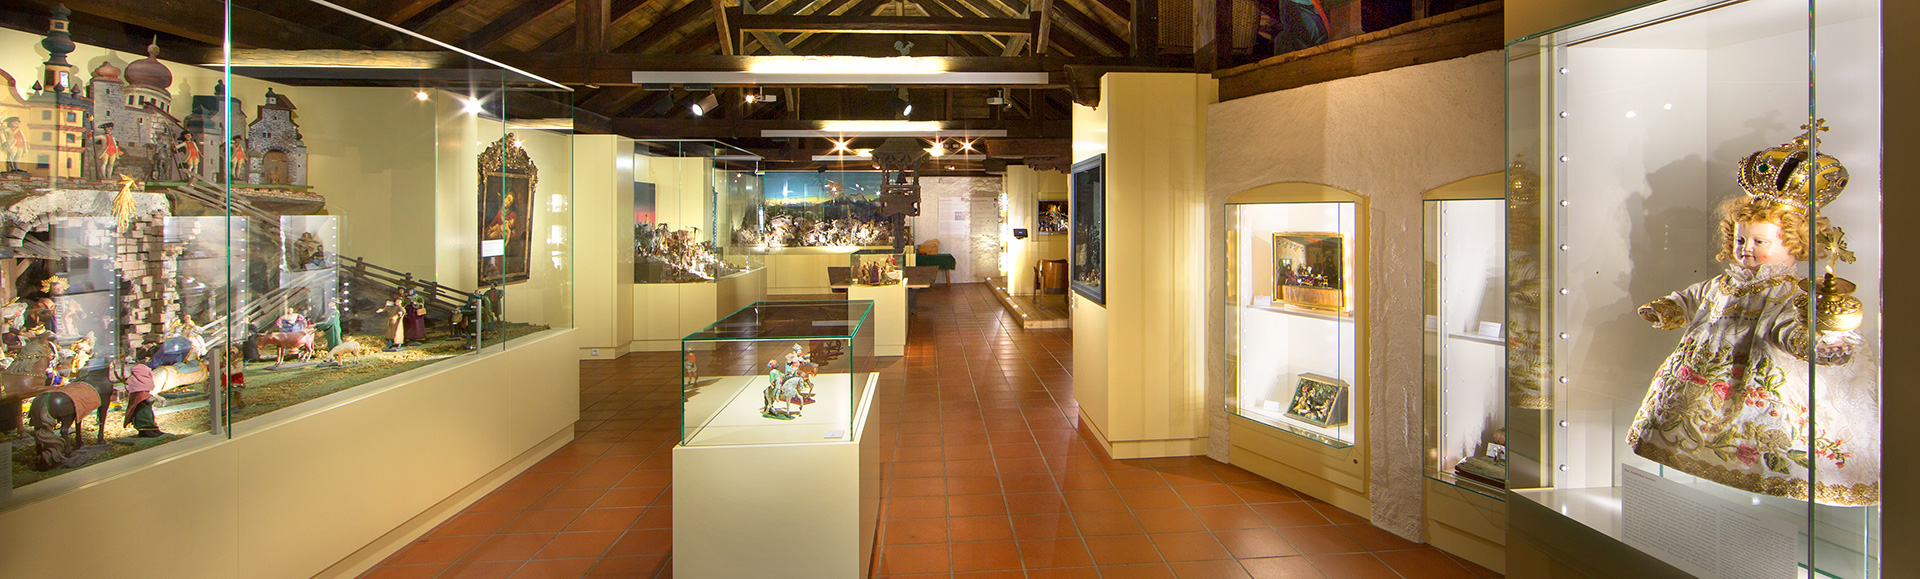 Museo Castello di Ritzen